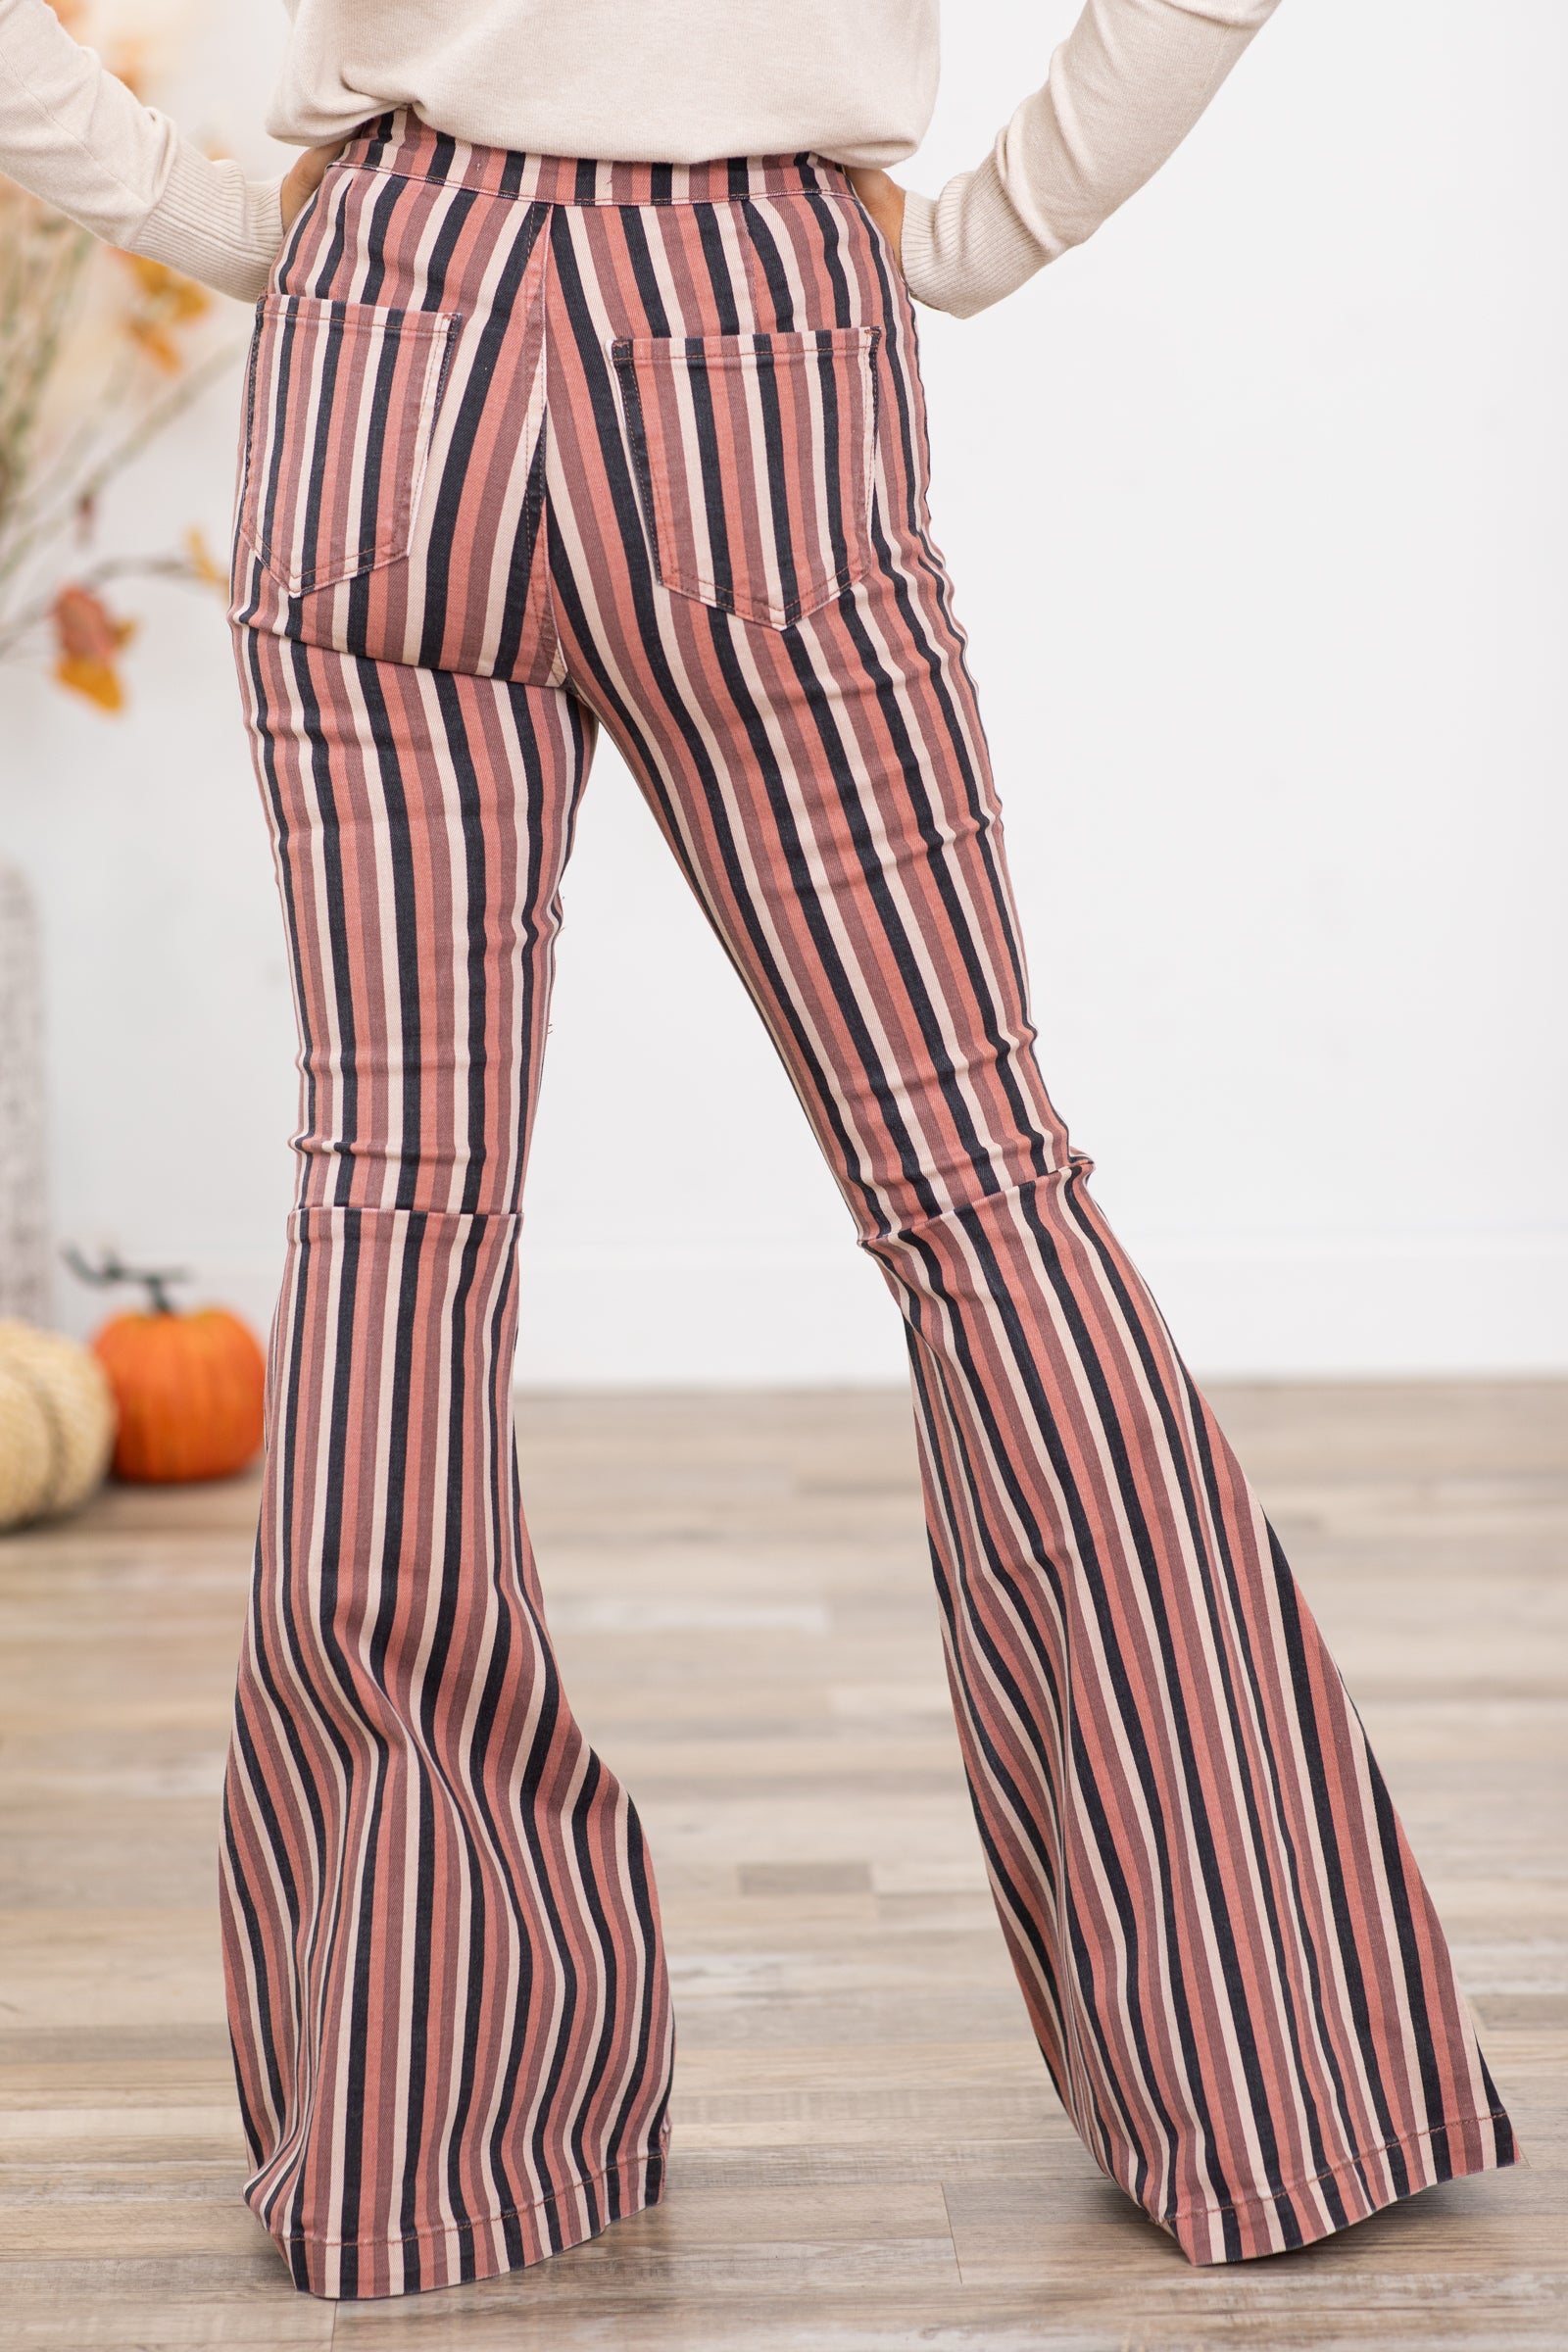 KanCan Terra Cotta Stripe Flare Jeans